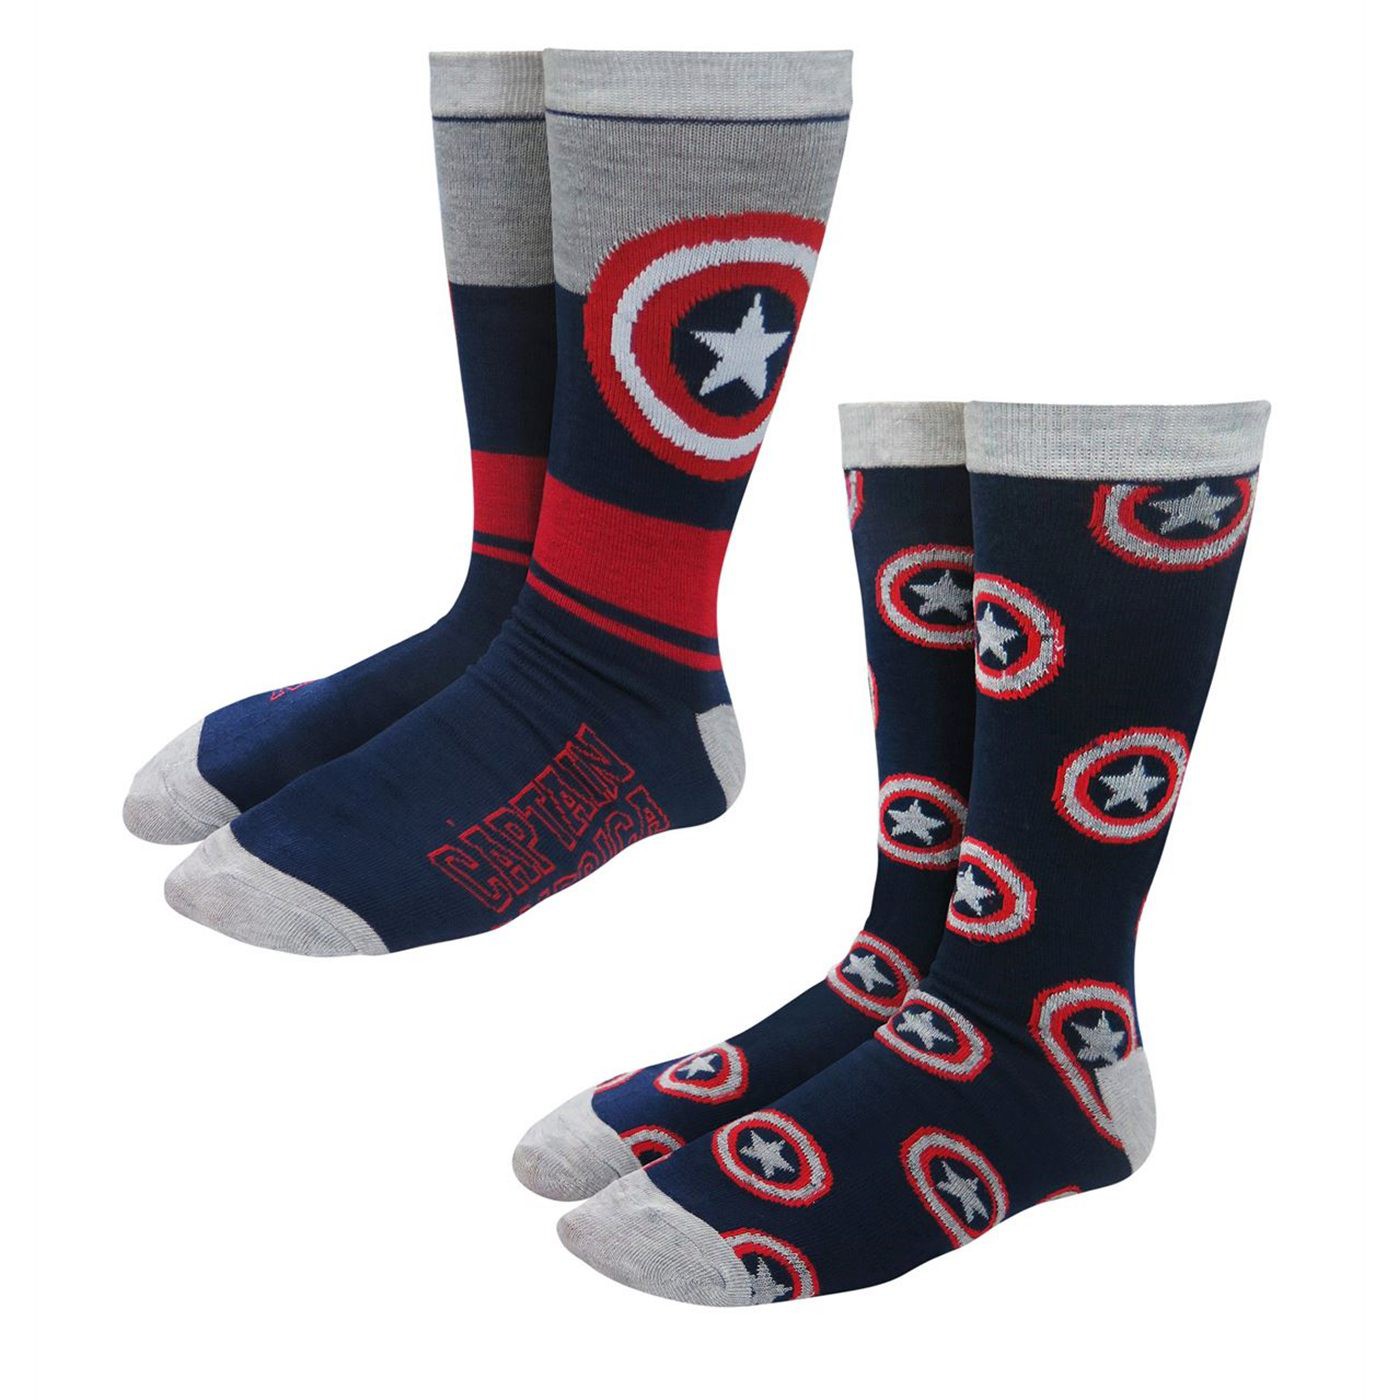 Captain America Multiple Shields Crew Socks 2-Pack